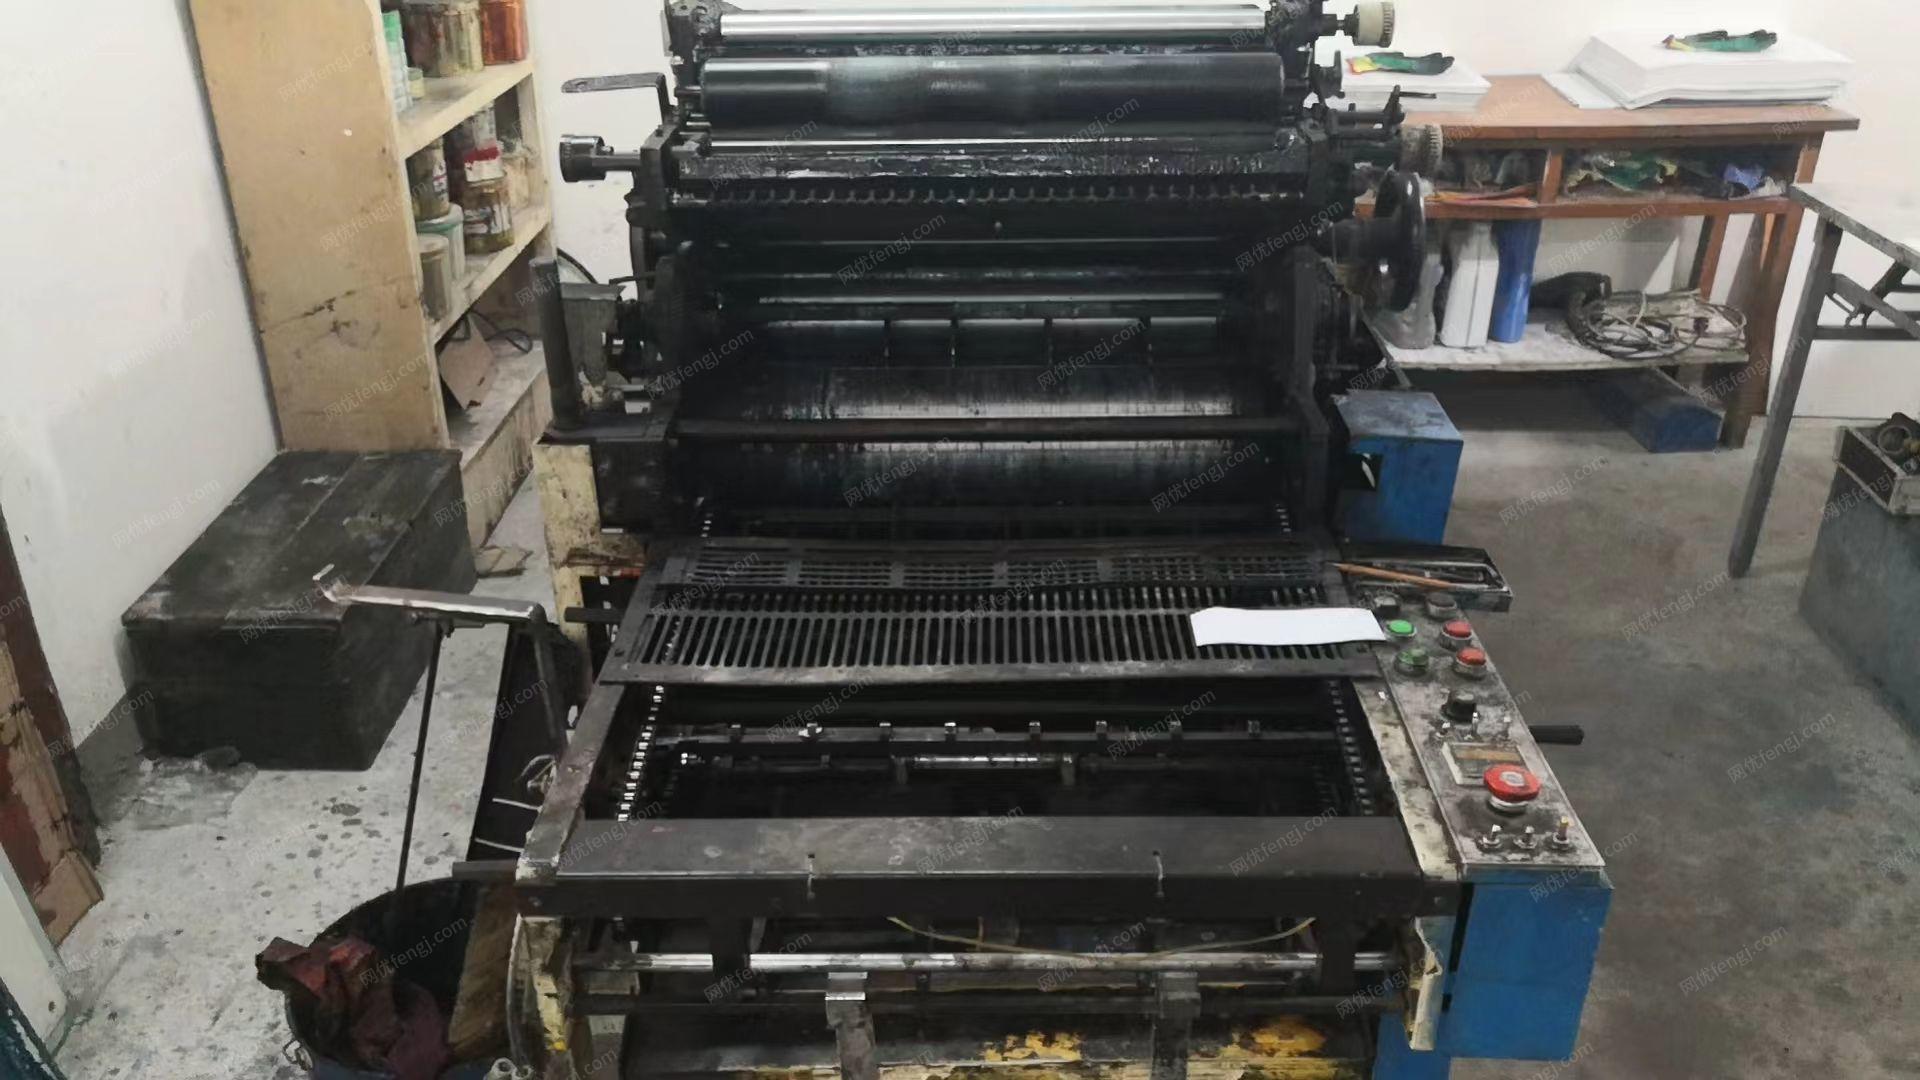 印刷厂处理山东单色4开印刷机,用了10年,加微信看图片报价,合适看货,有图片